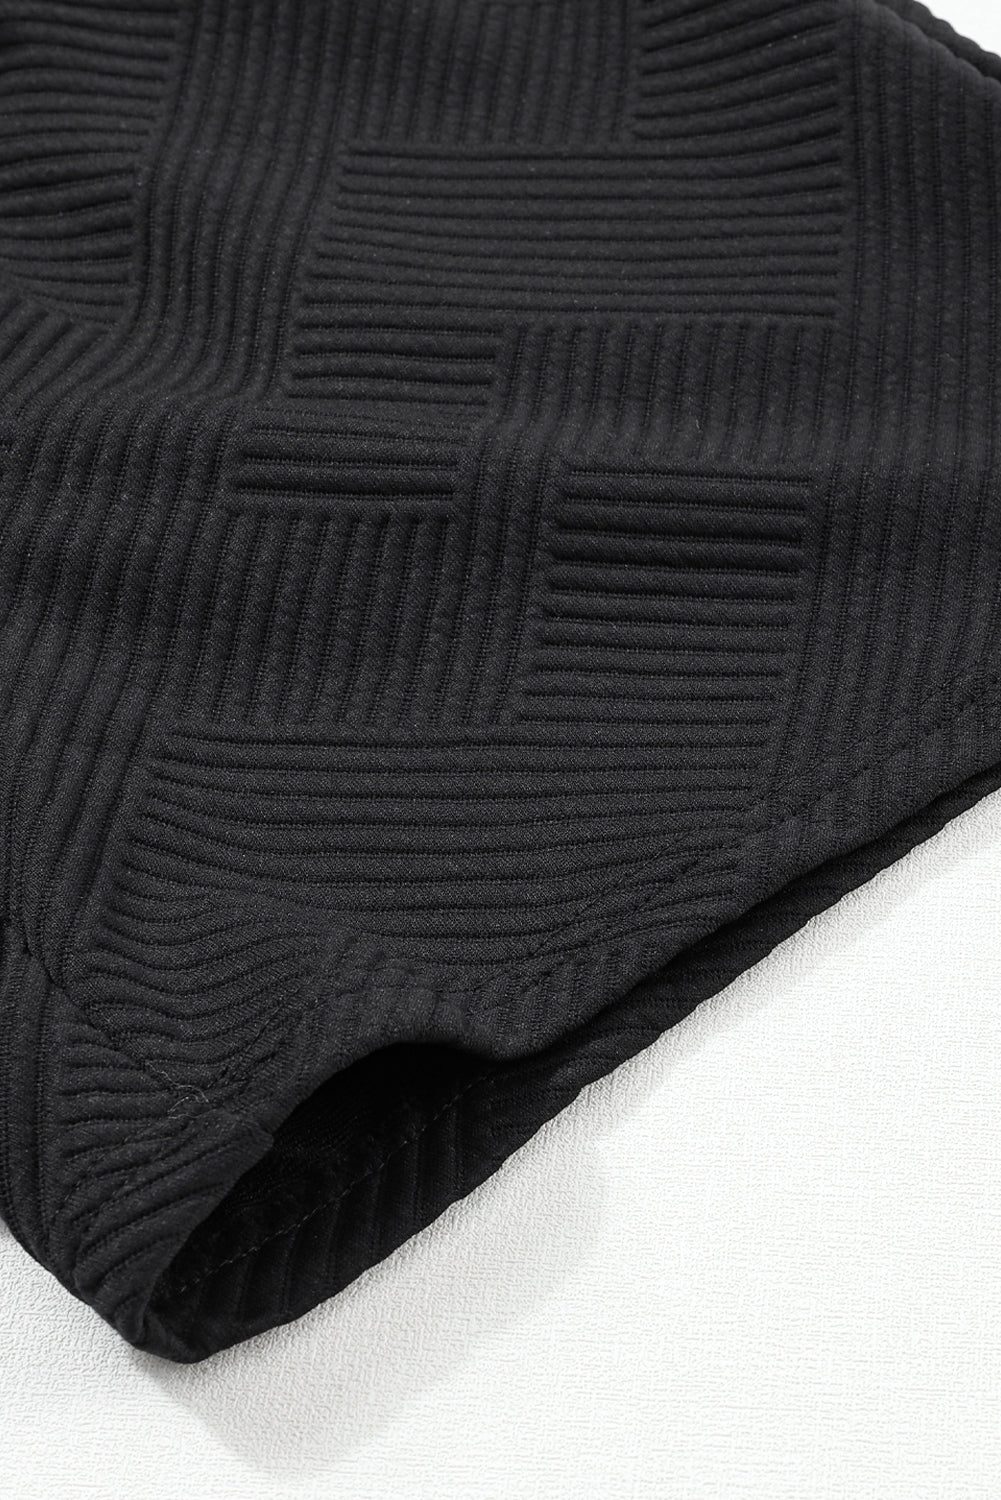 Crna teksturirana majica dugih rukava i kratki set s uzicom